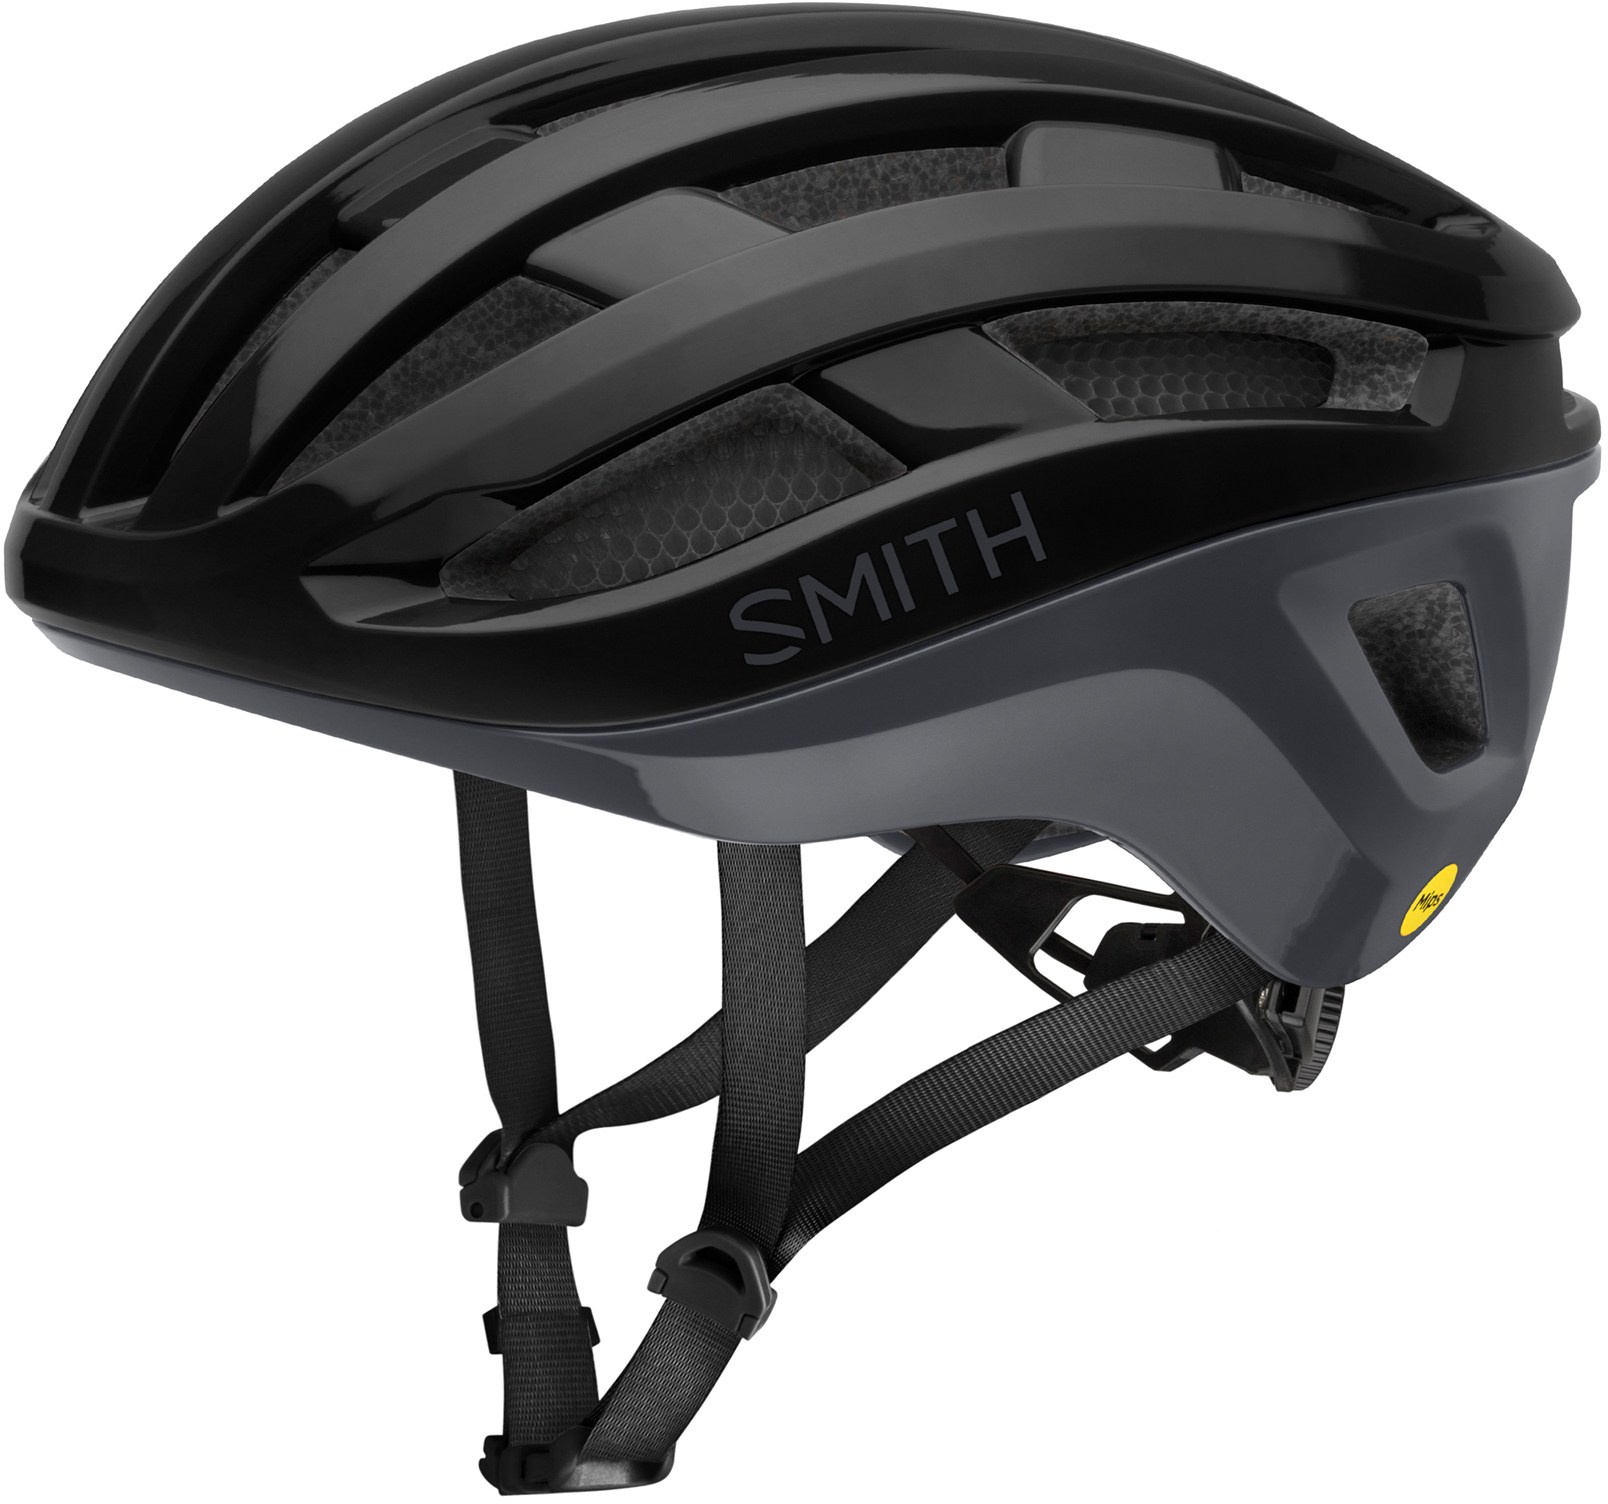 Велосипедный шлем Persist 2 Mips Smith, черный